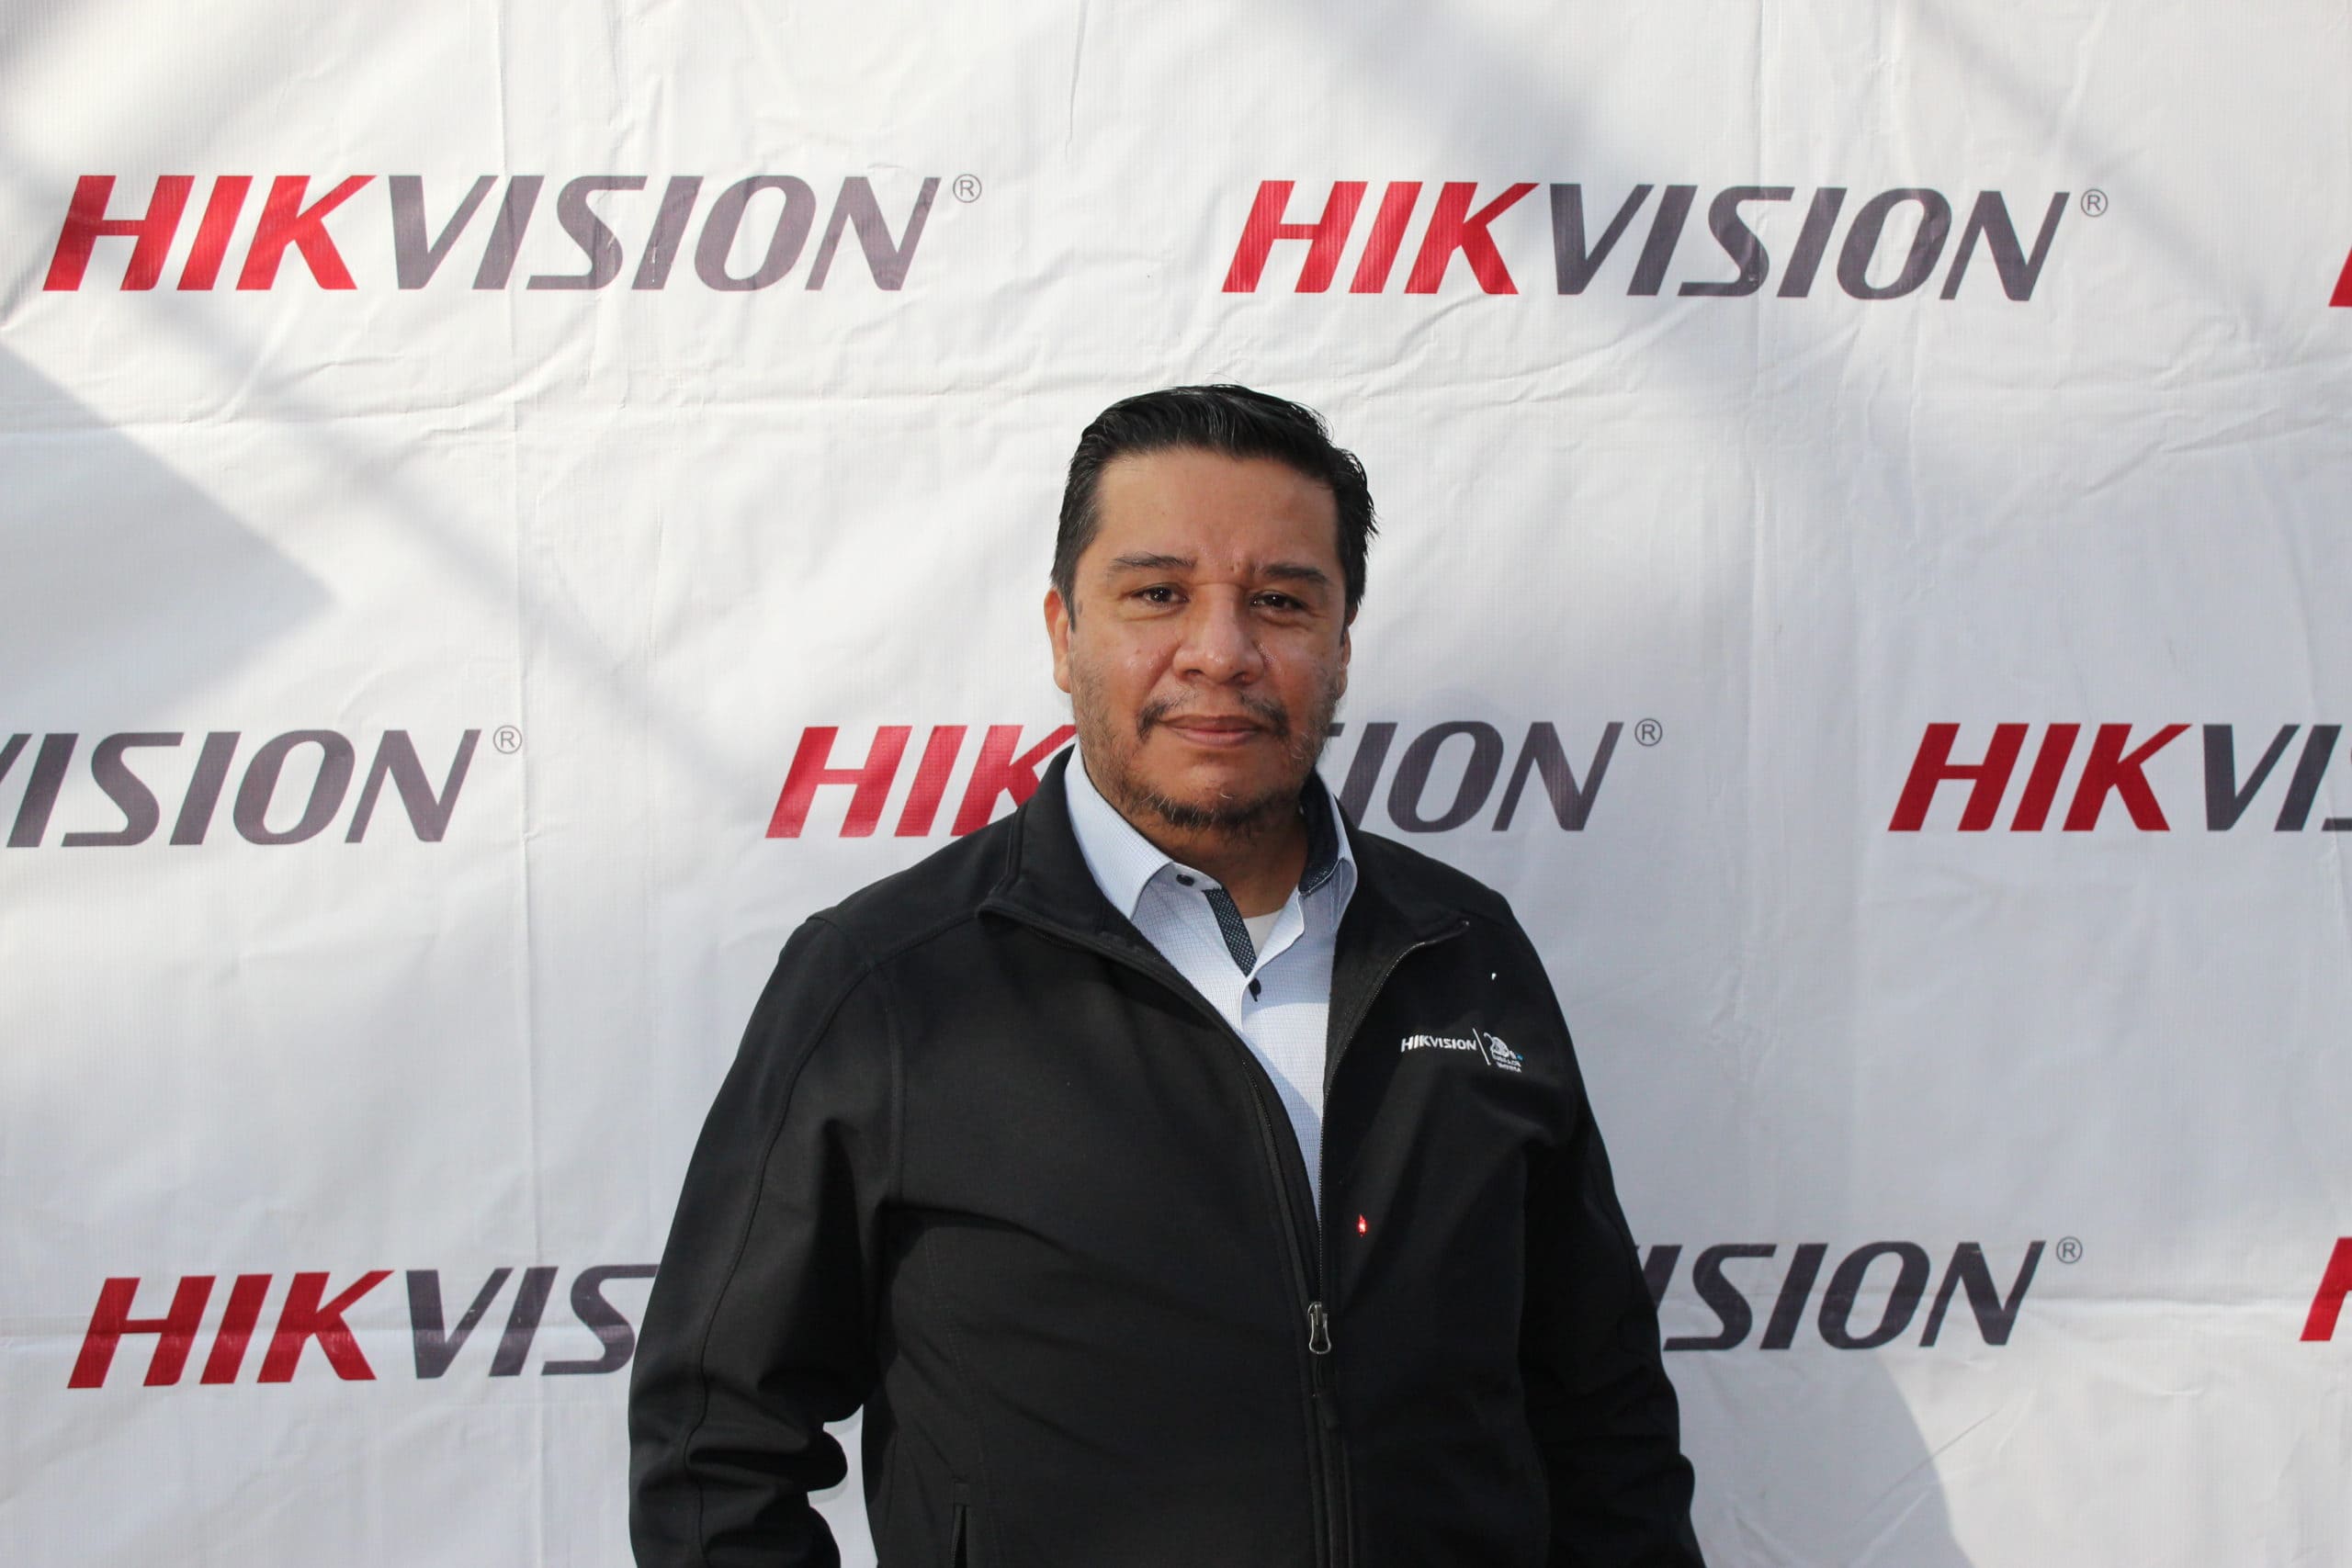 De la seguridad a pantallas comerciales: Hikvision amplía modelo de negocio